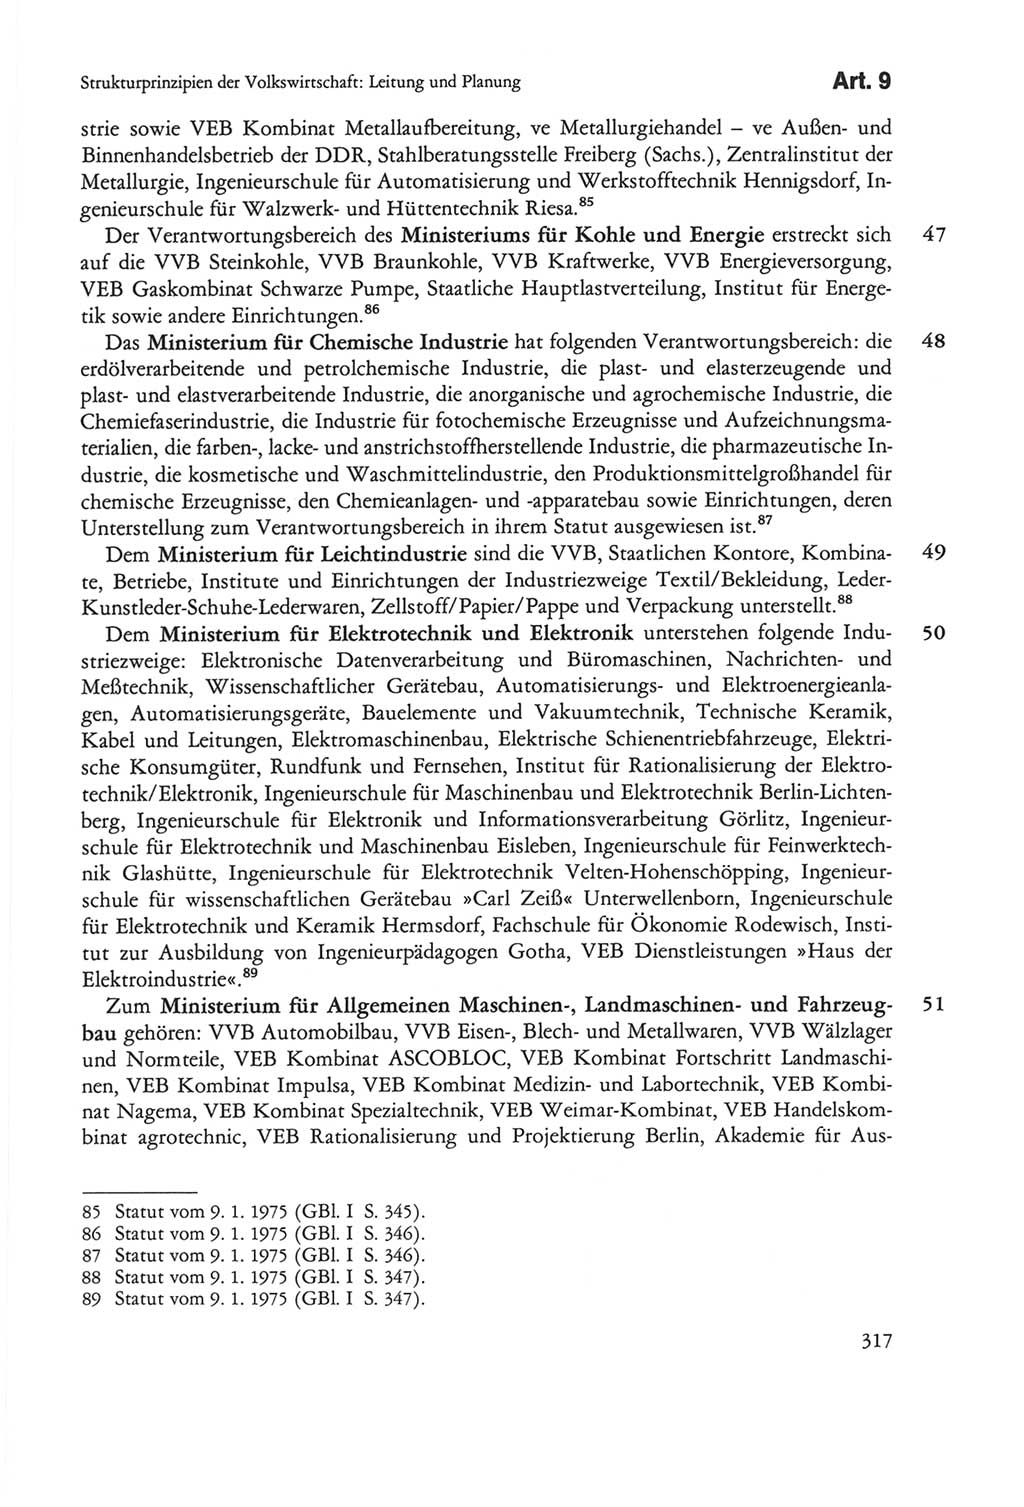 Die sozialistische Verfassung der Deutschen Demokratischen Republik (DDR), Kommentar 1982, Seite 317 (Soz. Verf. DDR Komm. 1982, S. 317)